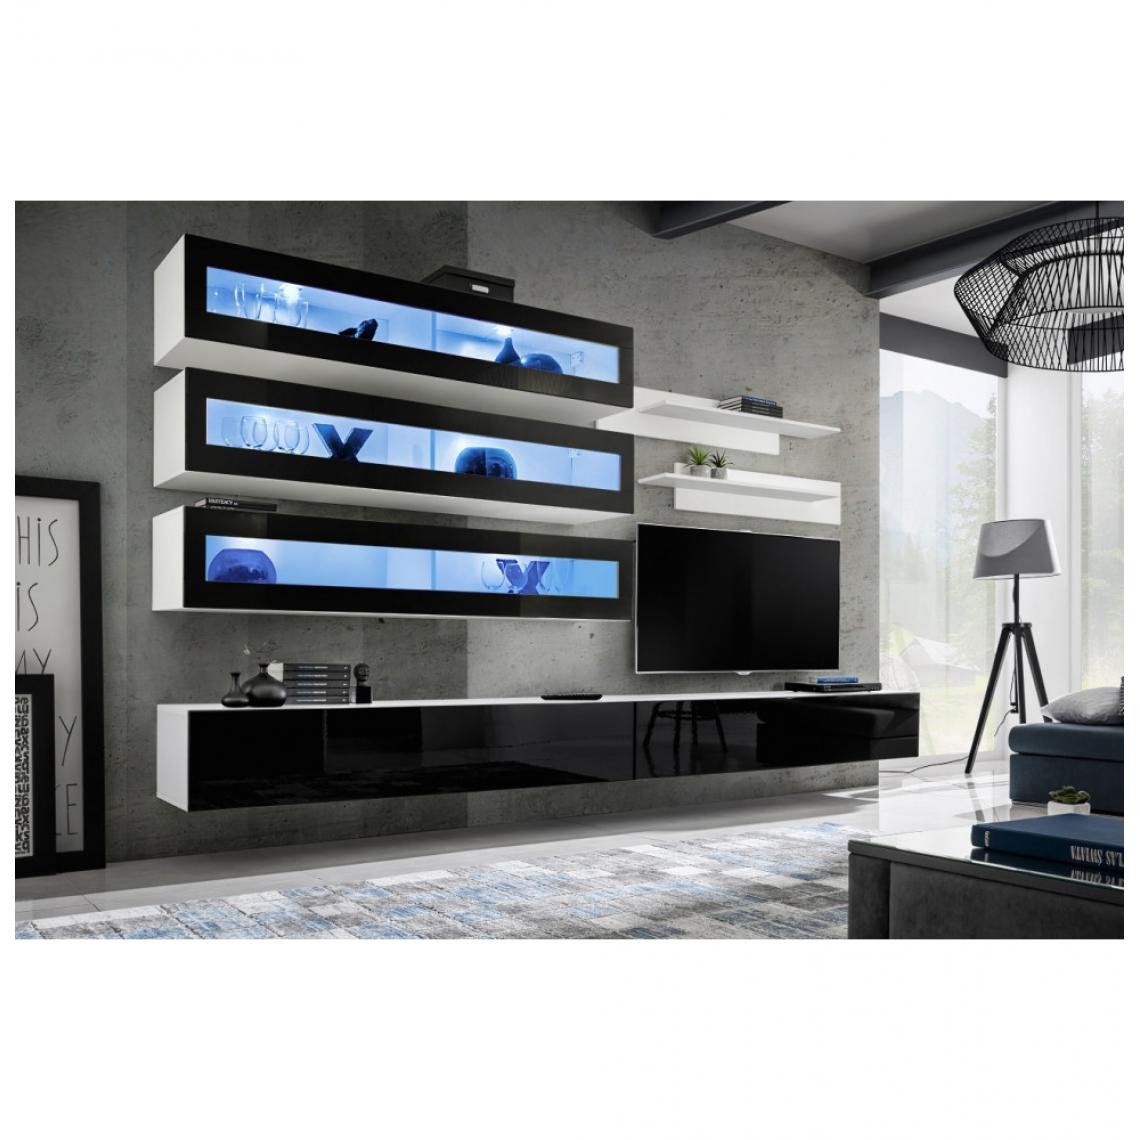 Ac-Deco - Ensemble mural - FLY J - 3 rangements LED - 2 meubles TV - 2 étagères - Blanc et noir - Modèle 1 - Meubles TV, Hi-Fi